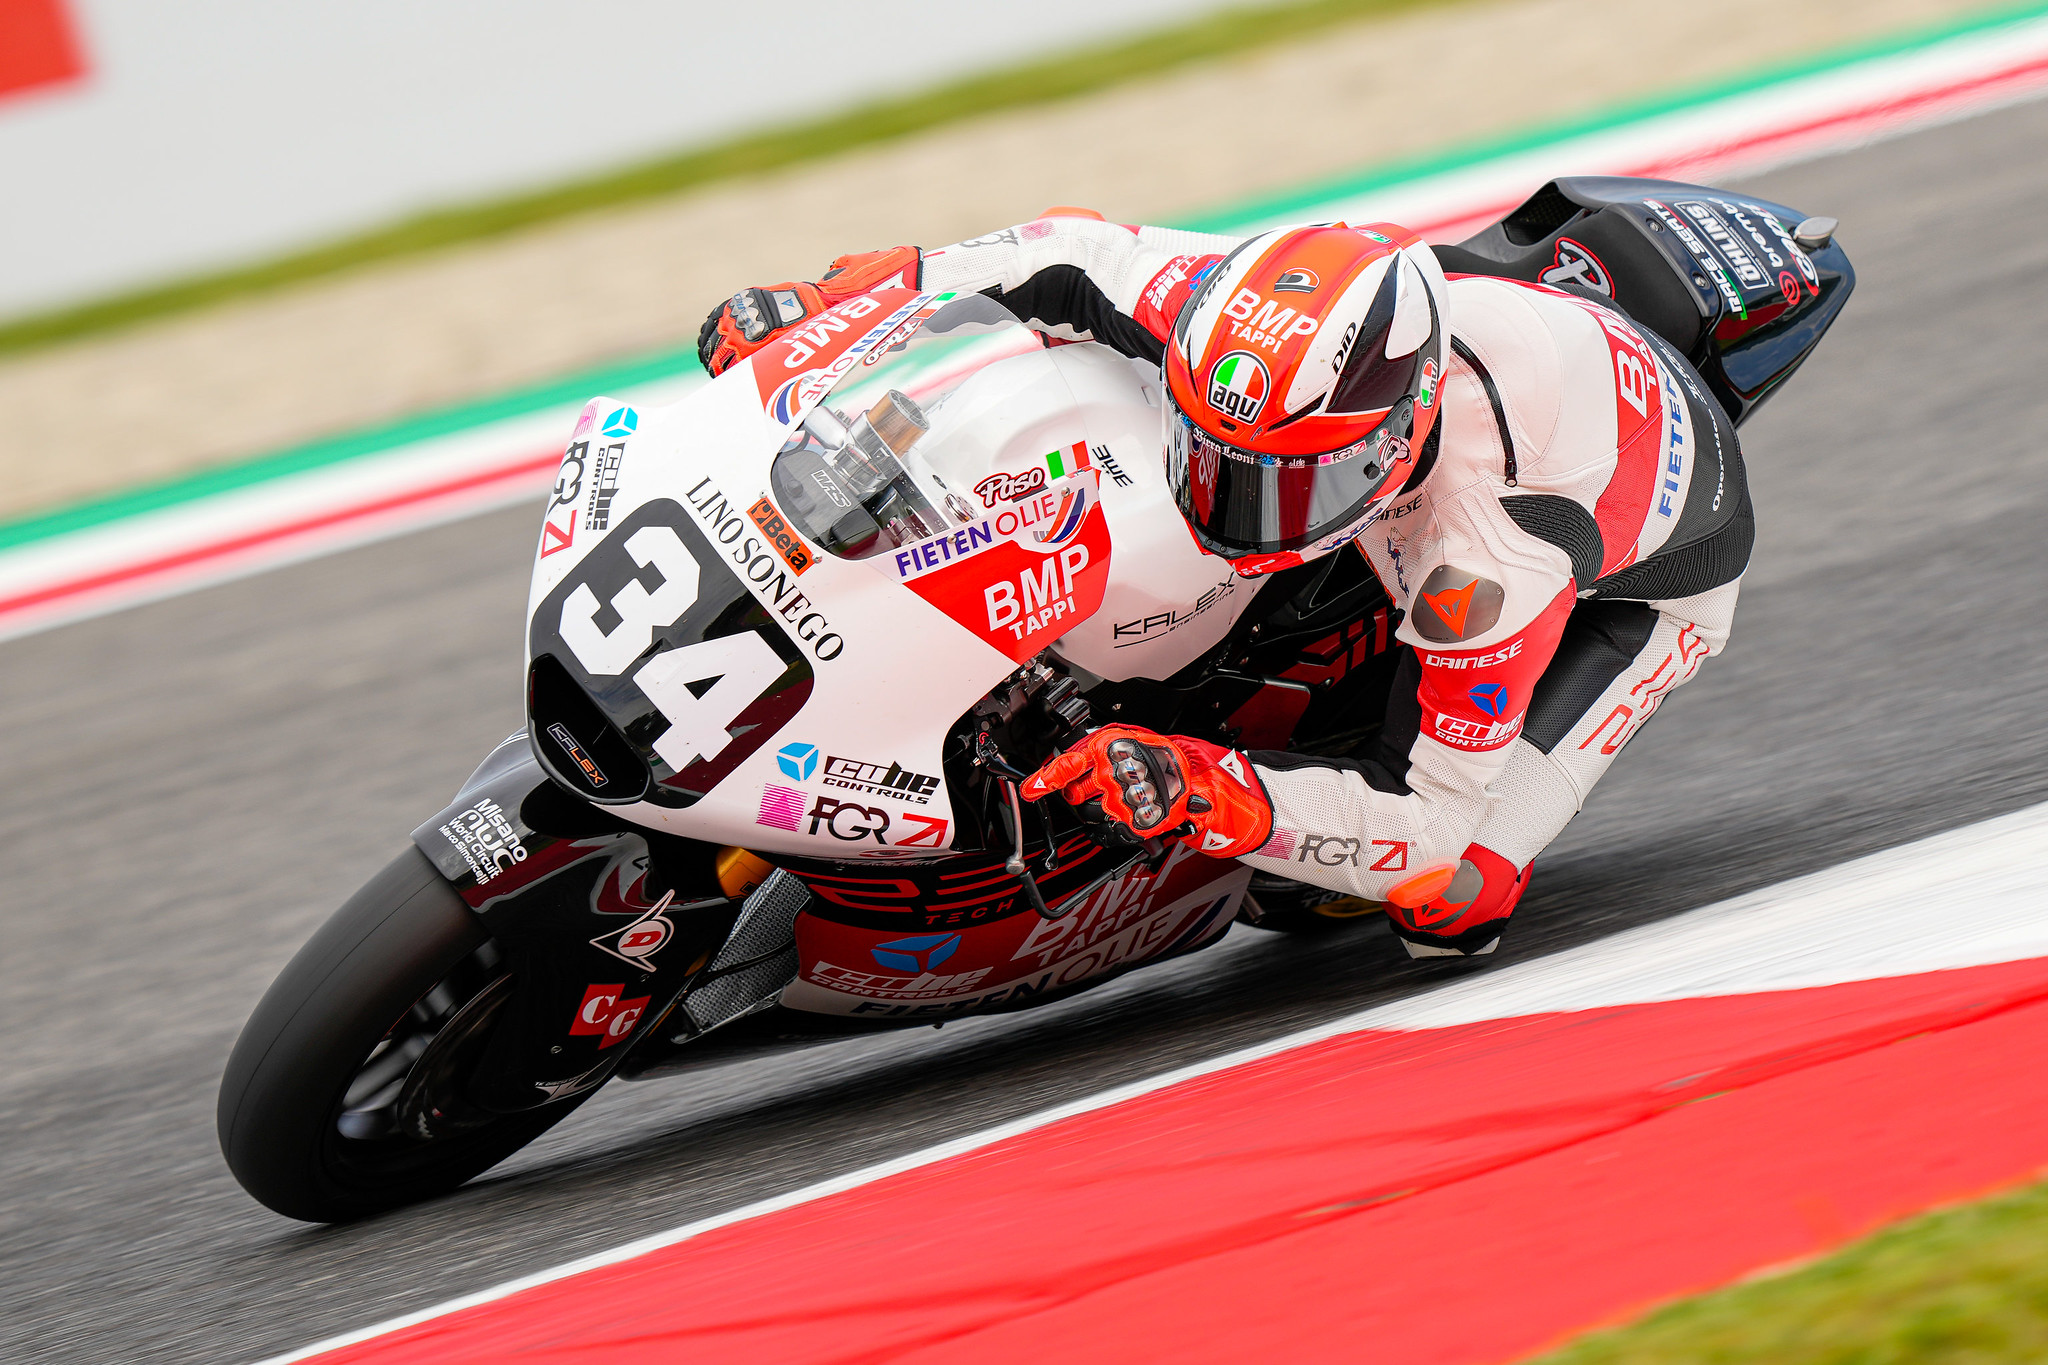 #34 Mattia Pasini - (ITA) - Fieten Olie Racing GP - Kalex